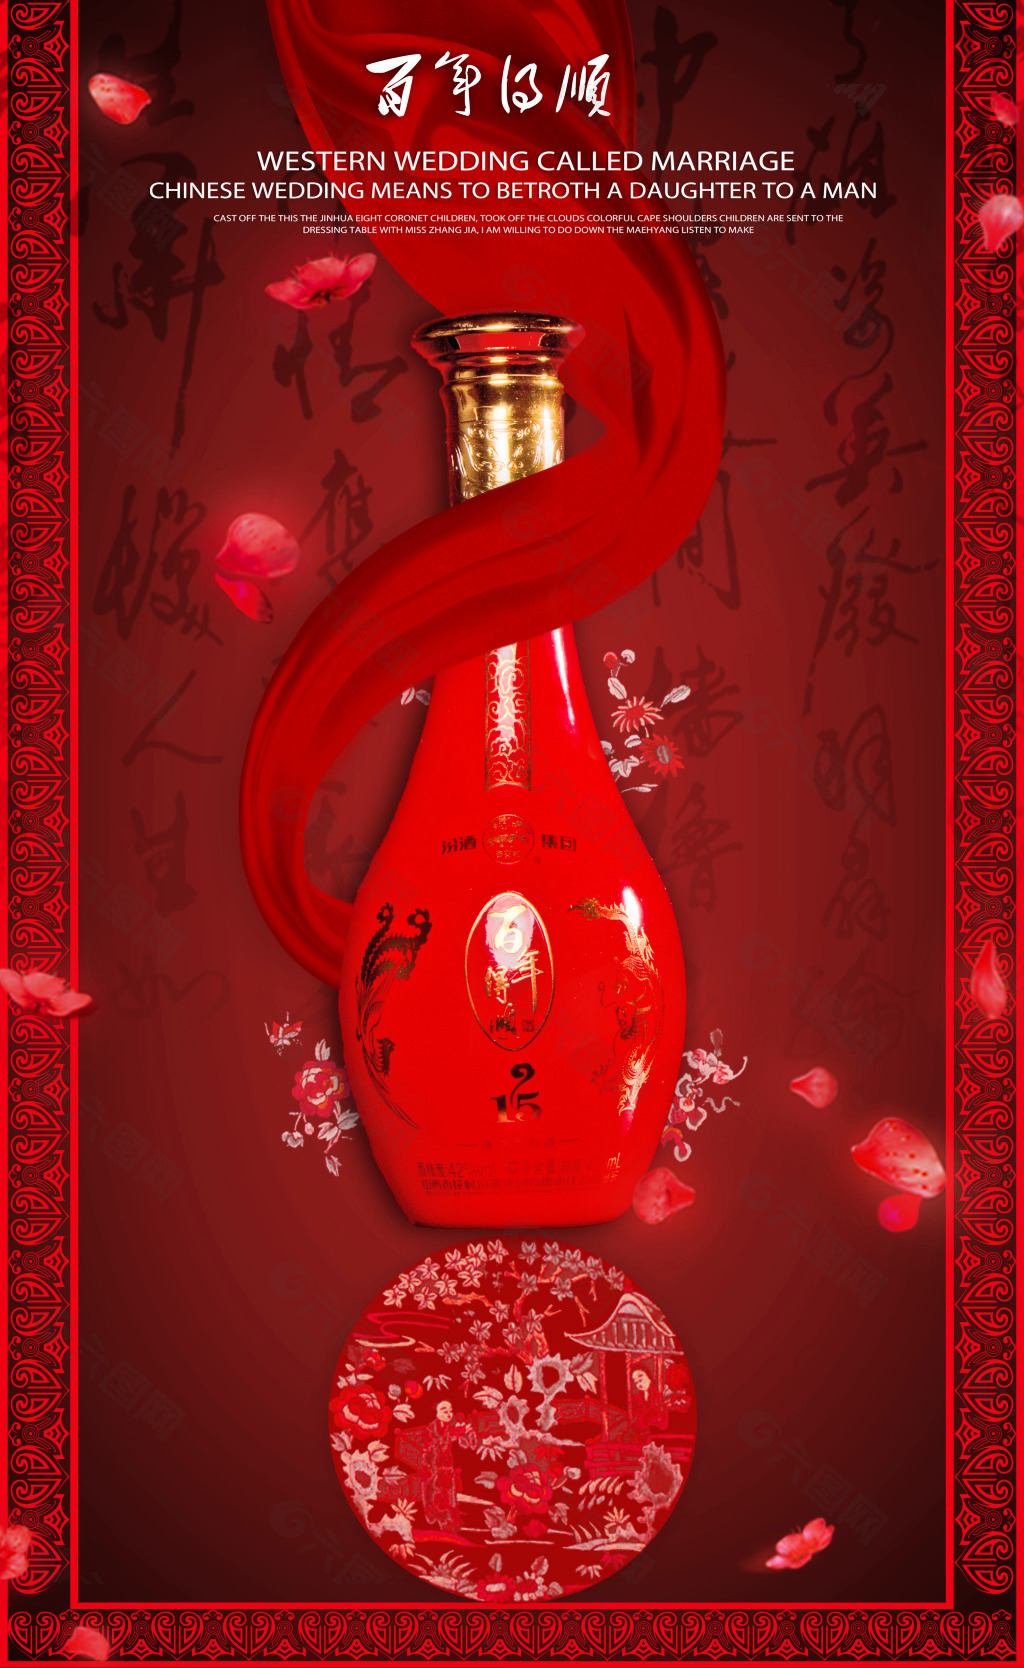 中国红百年得顺酒瓶设计